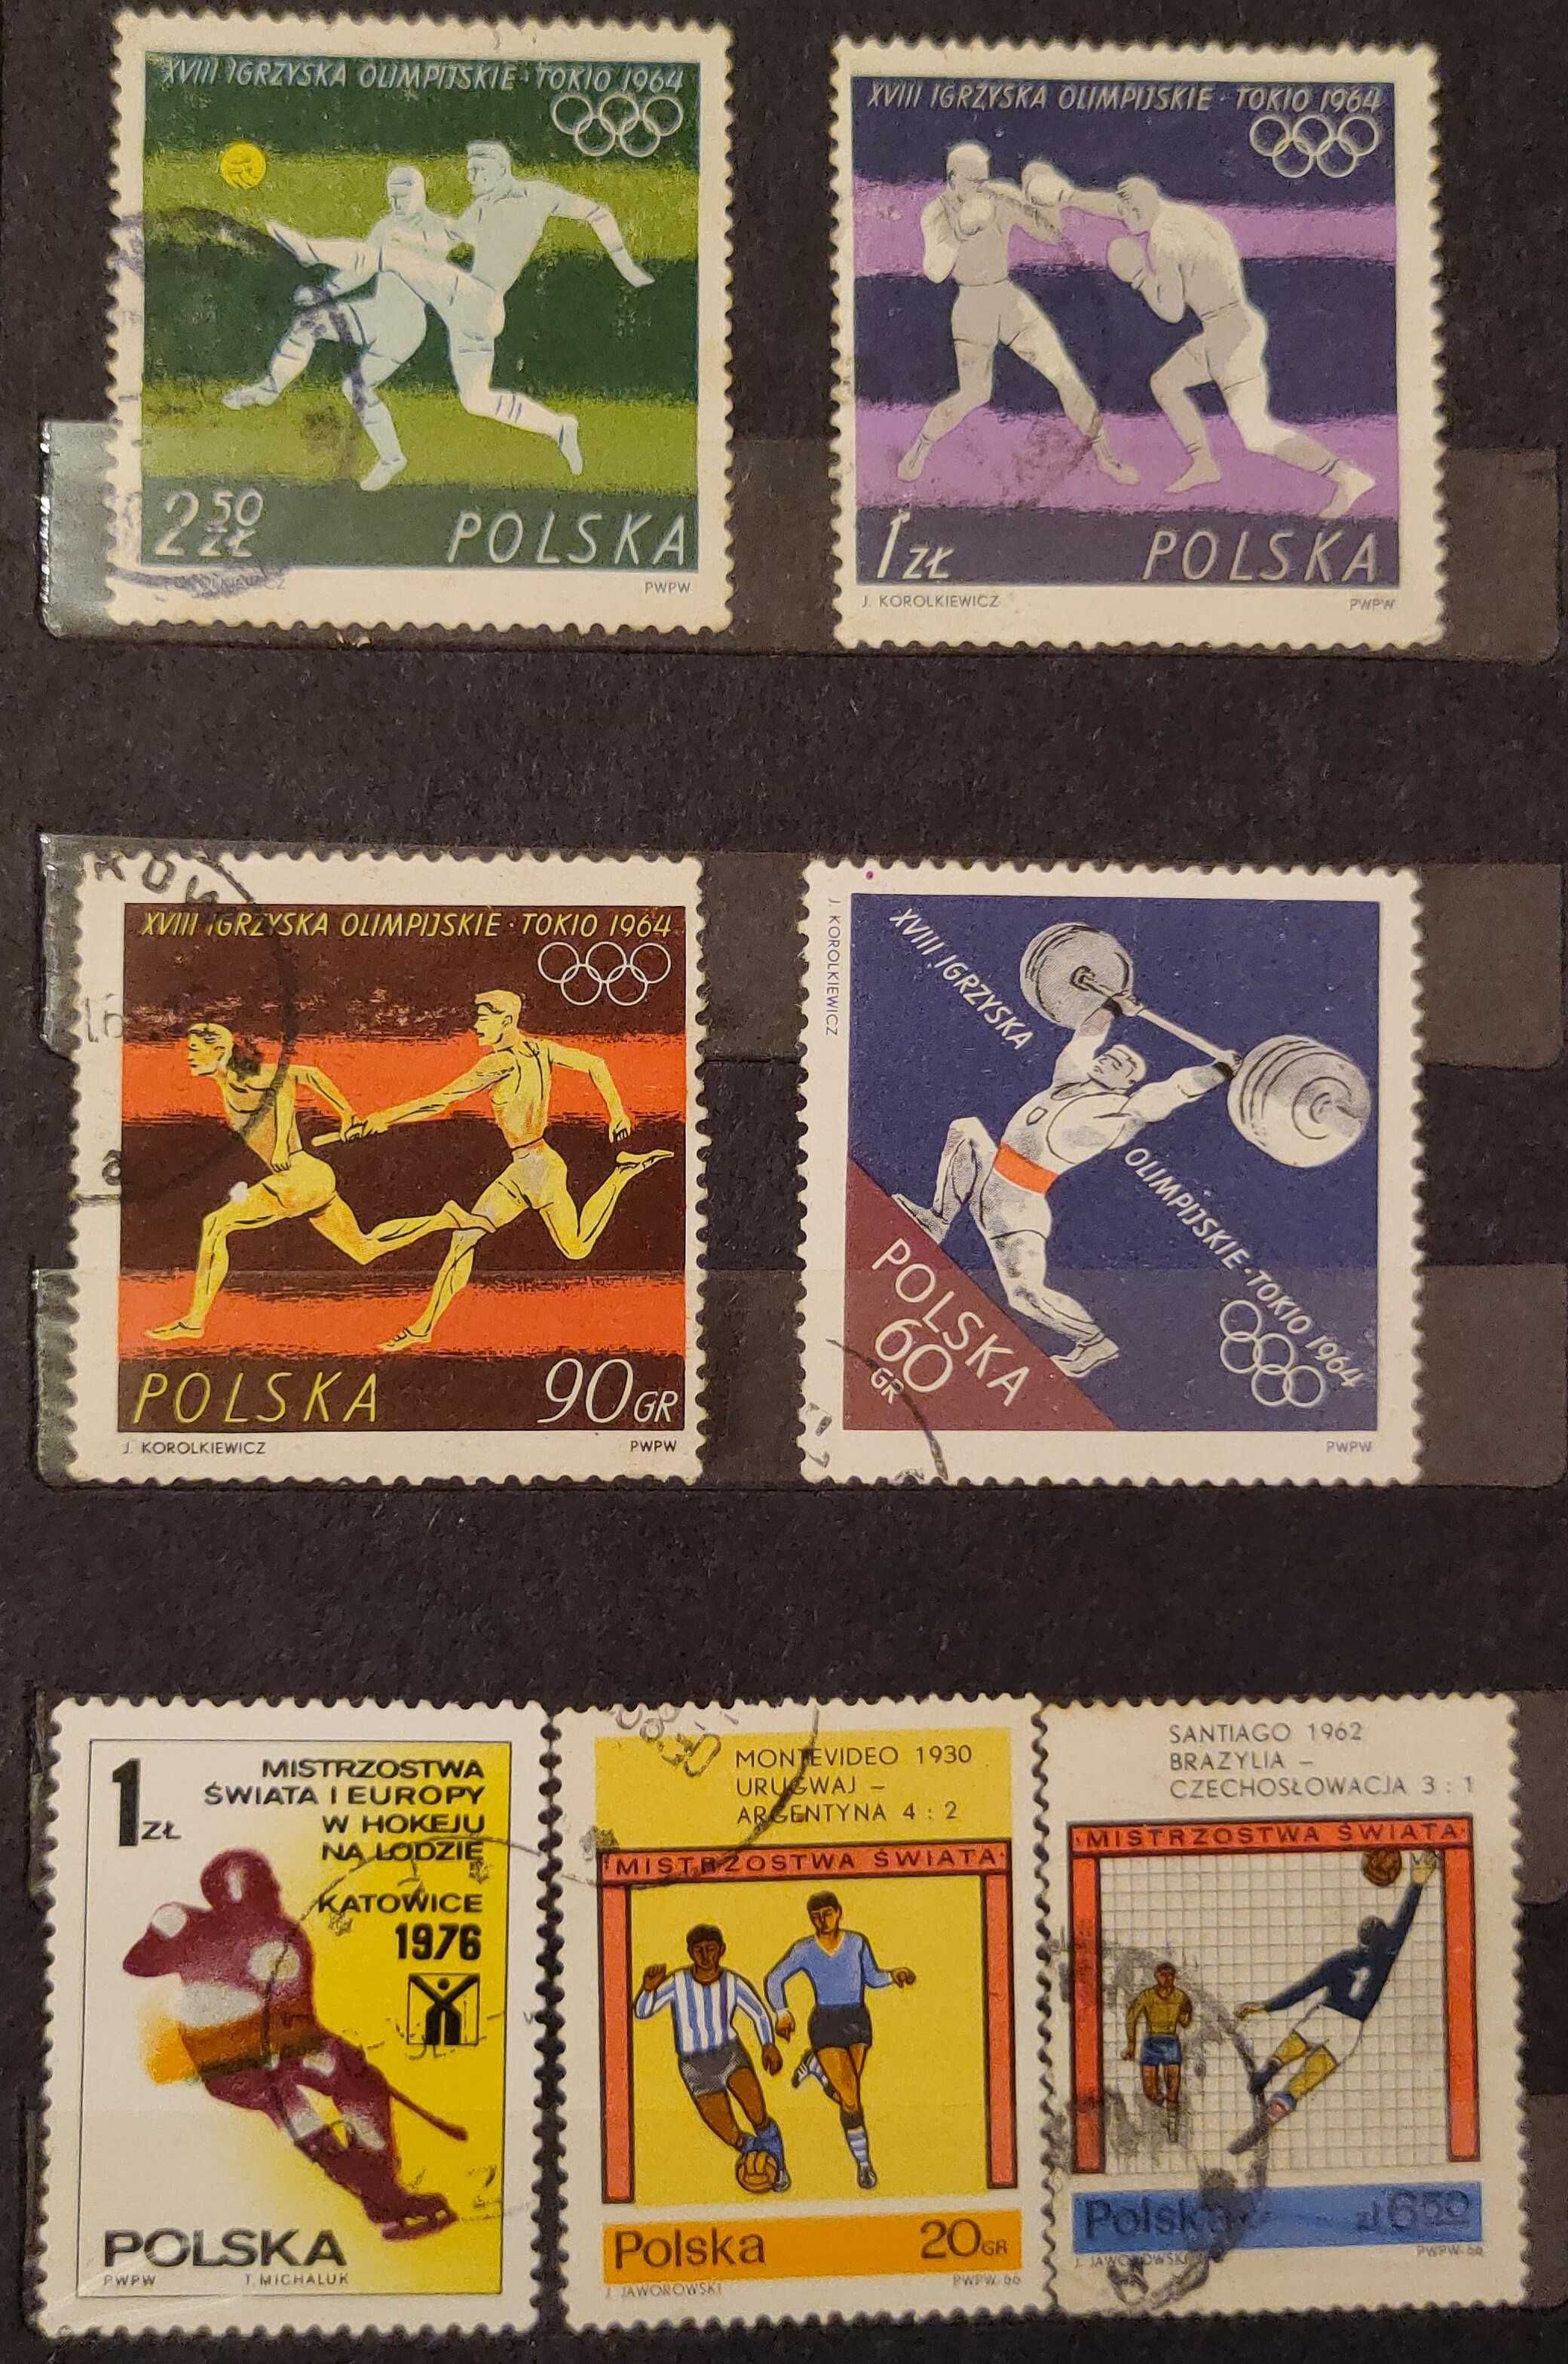 Znaczki pocztowe, znaczek pocztowy z Polski (54 sztuki), lata 70-80